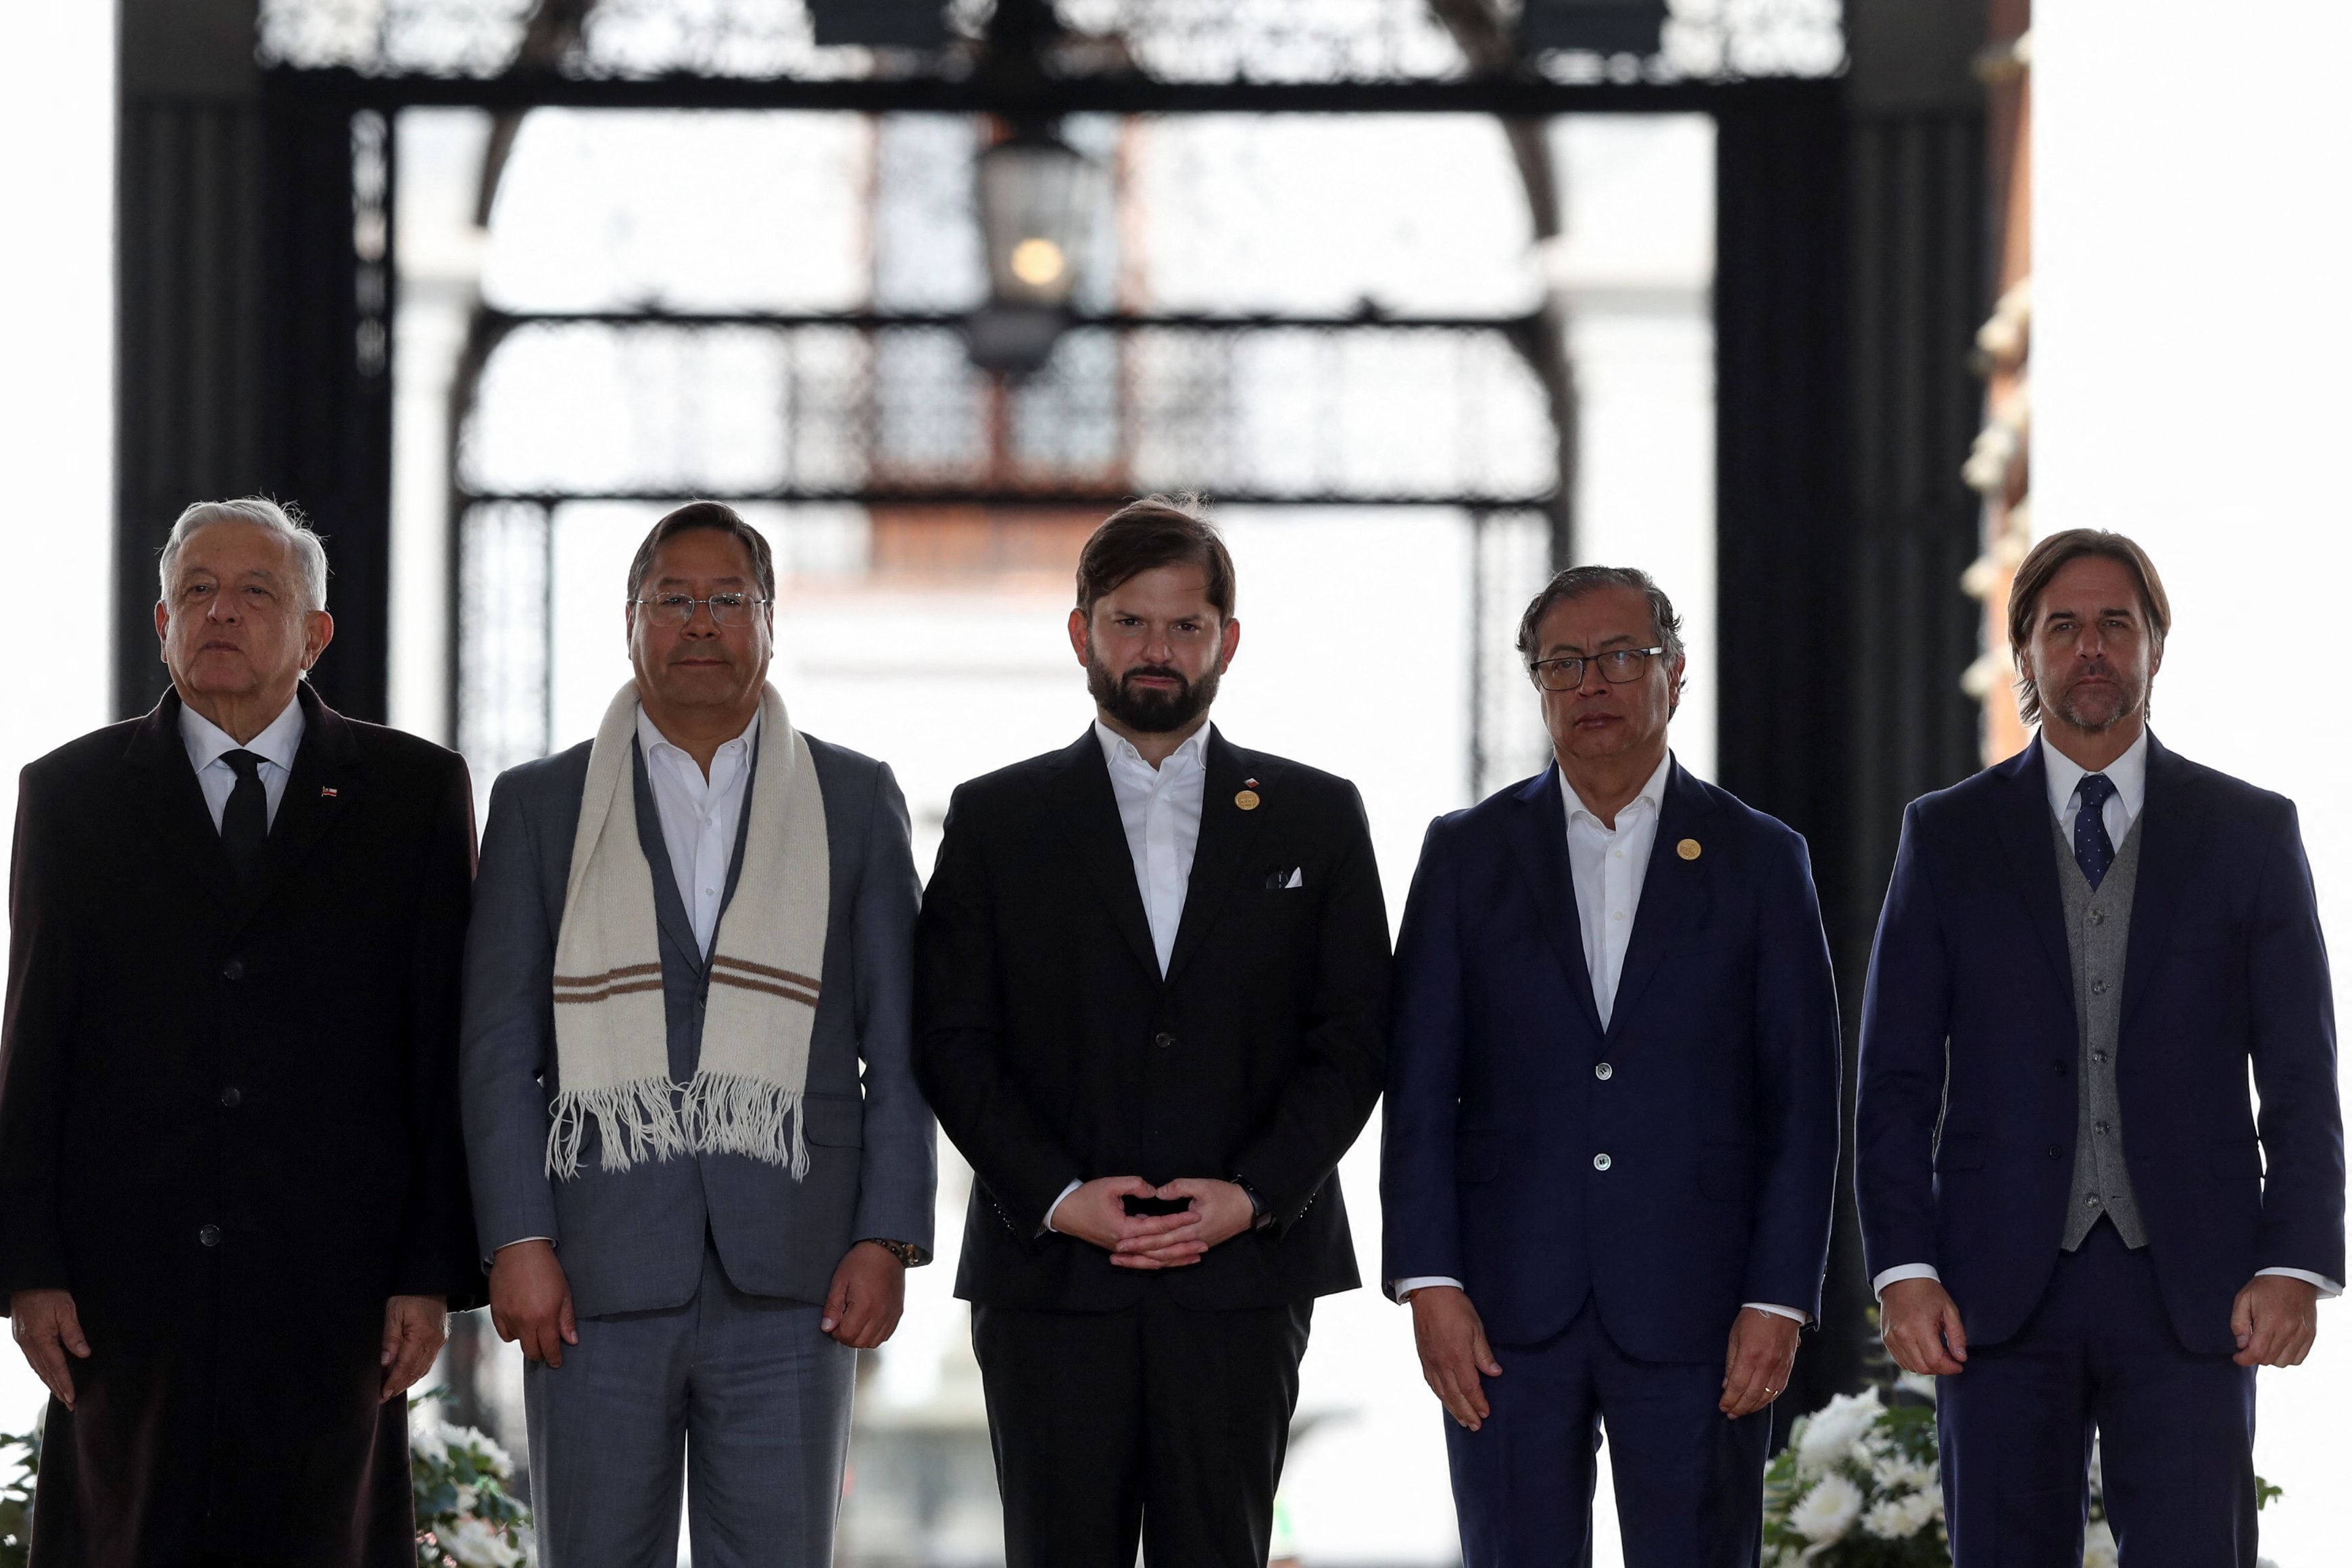 Boric rodeado de los presidentes que viajaron a Chile para estar presentes en la conmemoración de los 50 años del Golpe de Estado. REUTERS/Ivan Alvarado